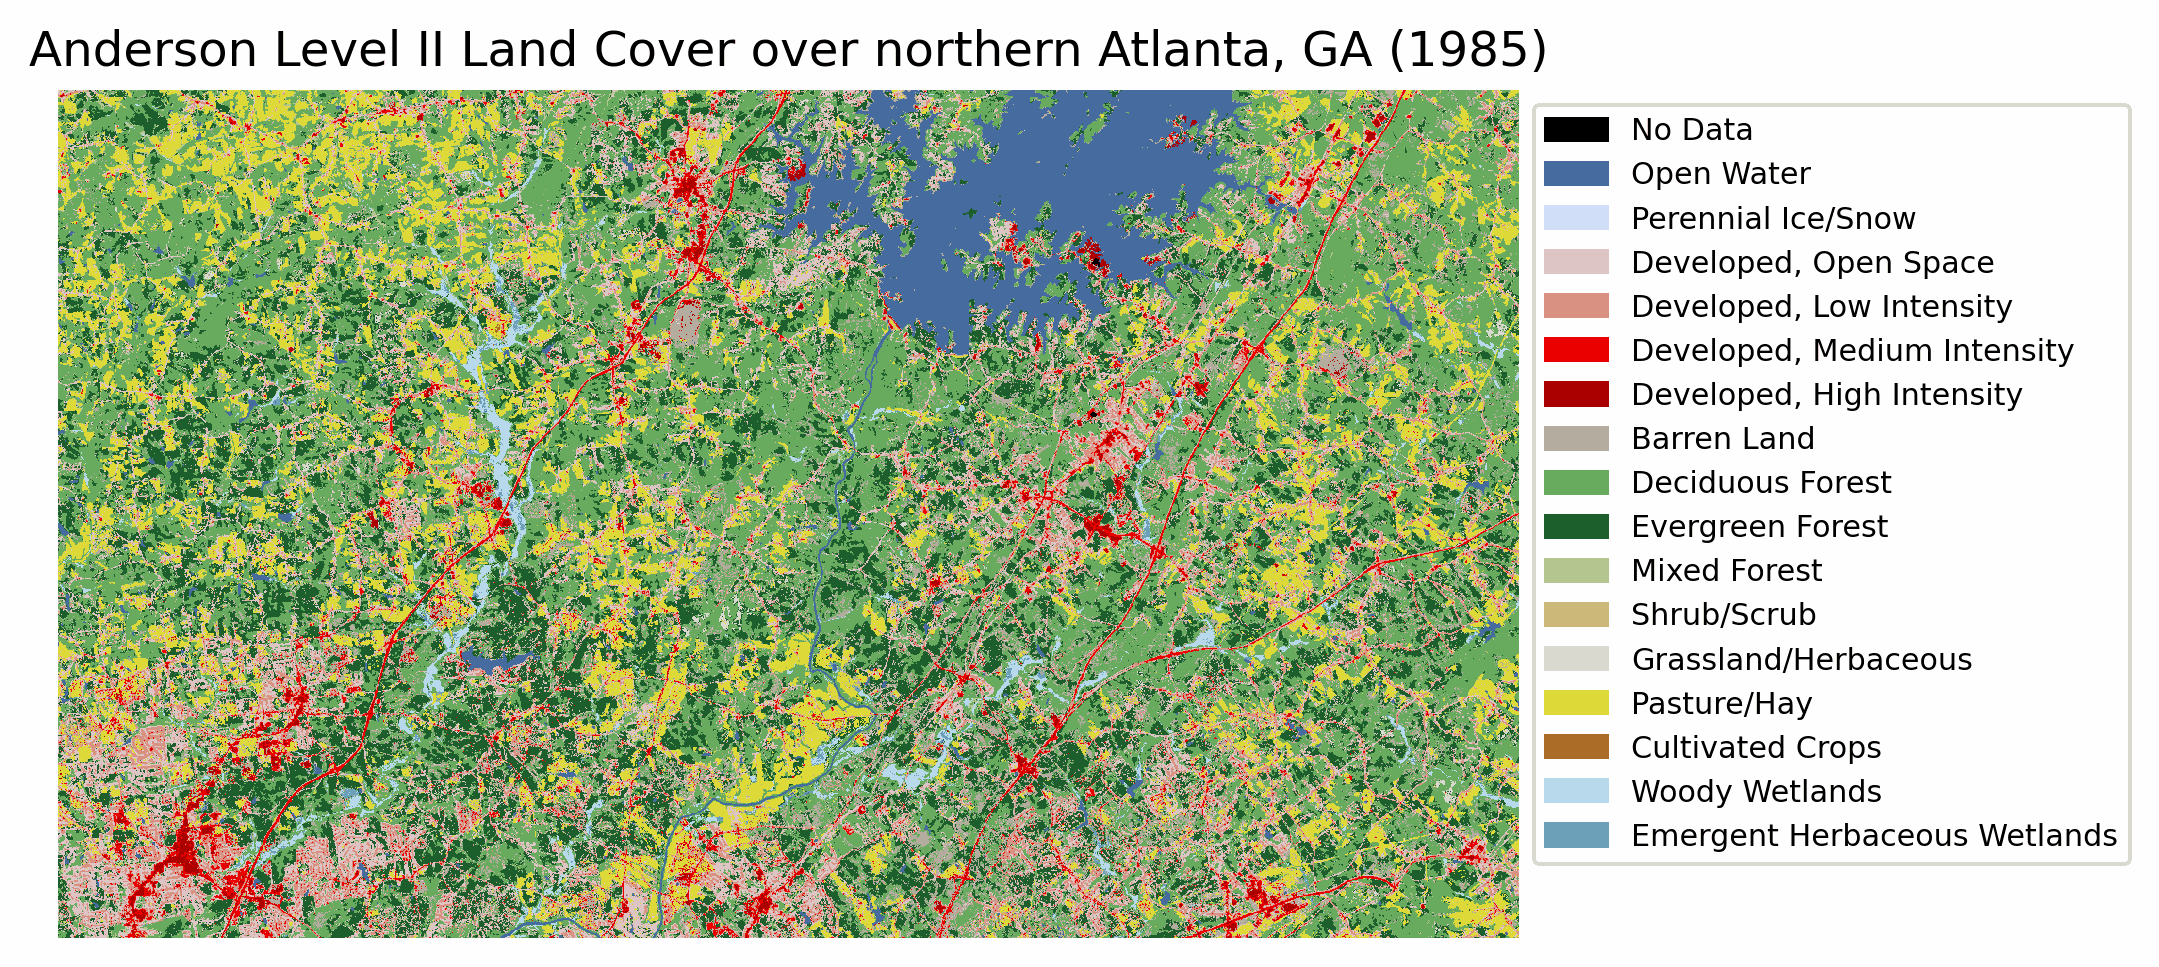 Anderson Level II Land Cover over Atlanta, GA